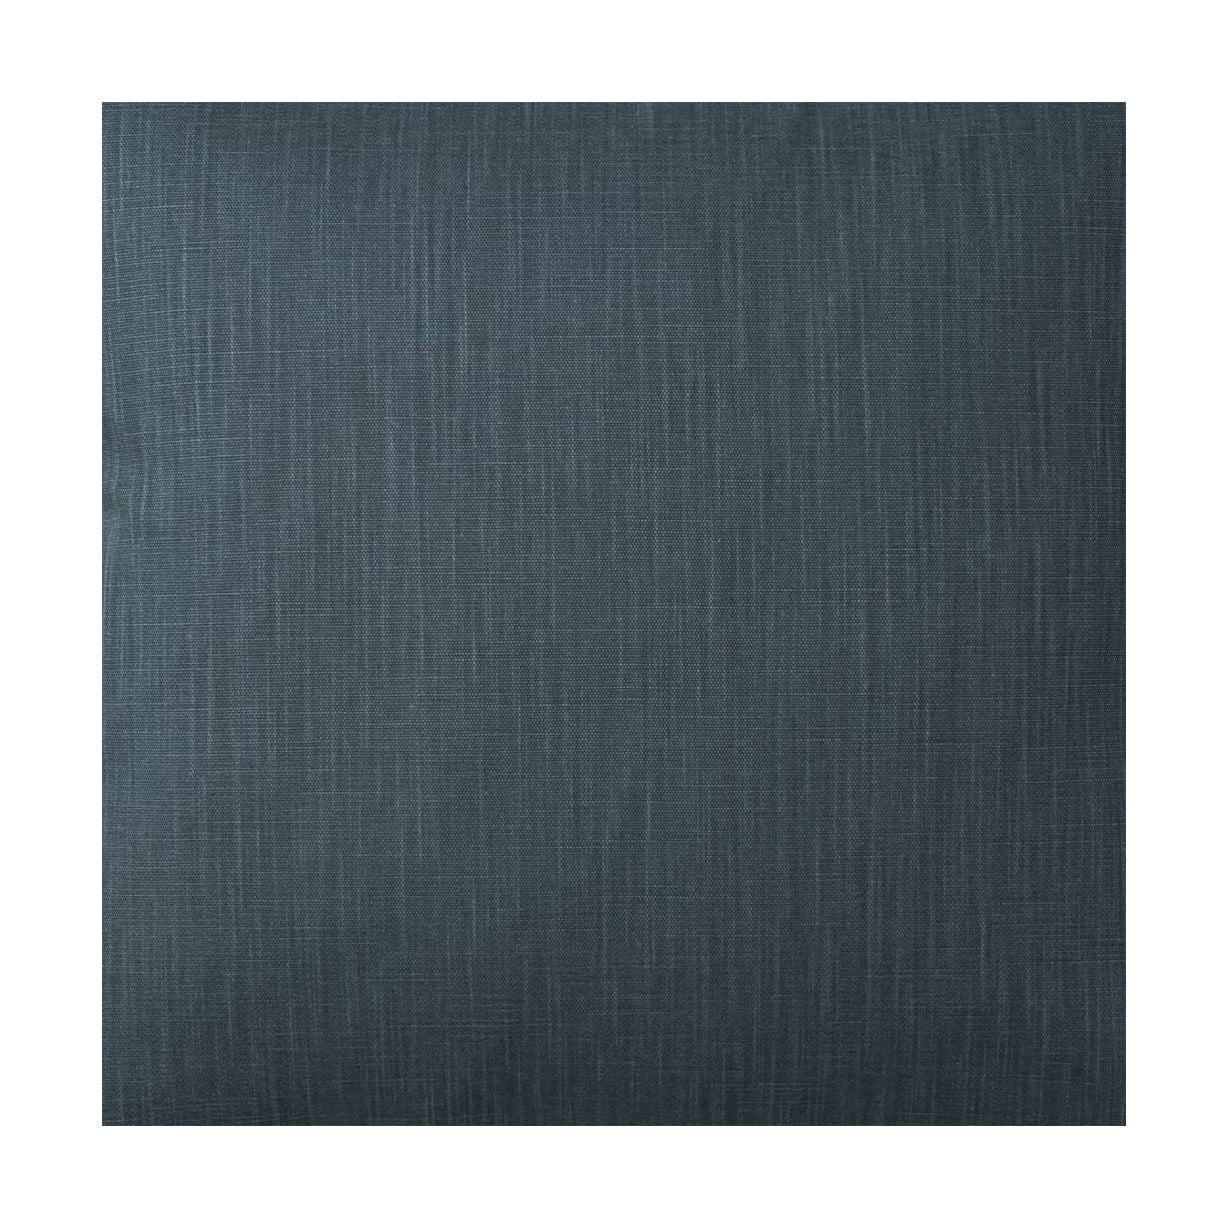 Larghezza del tessuto Spira Klotz 150 cm (prezzo per metro), blu polveroso